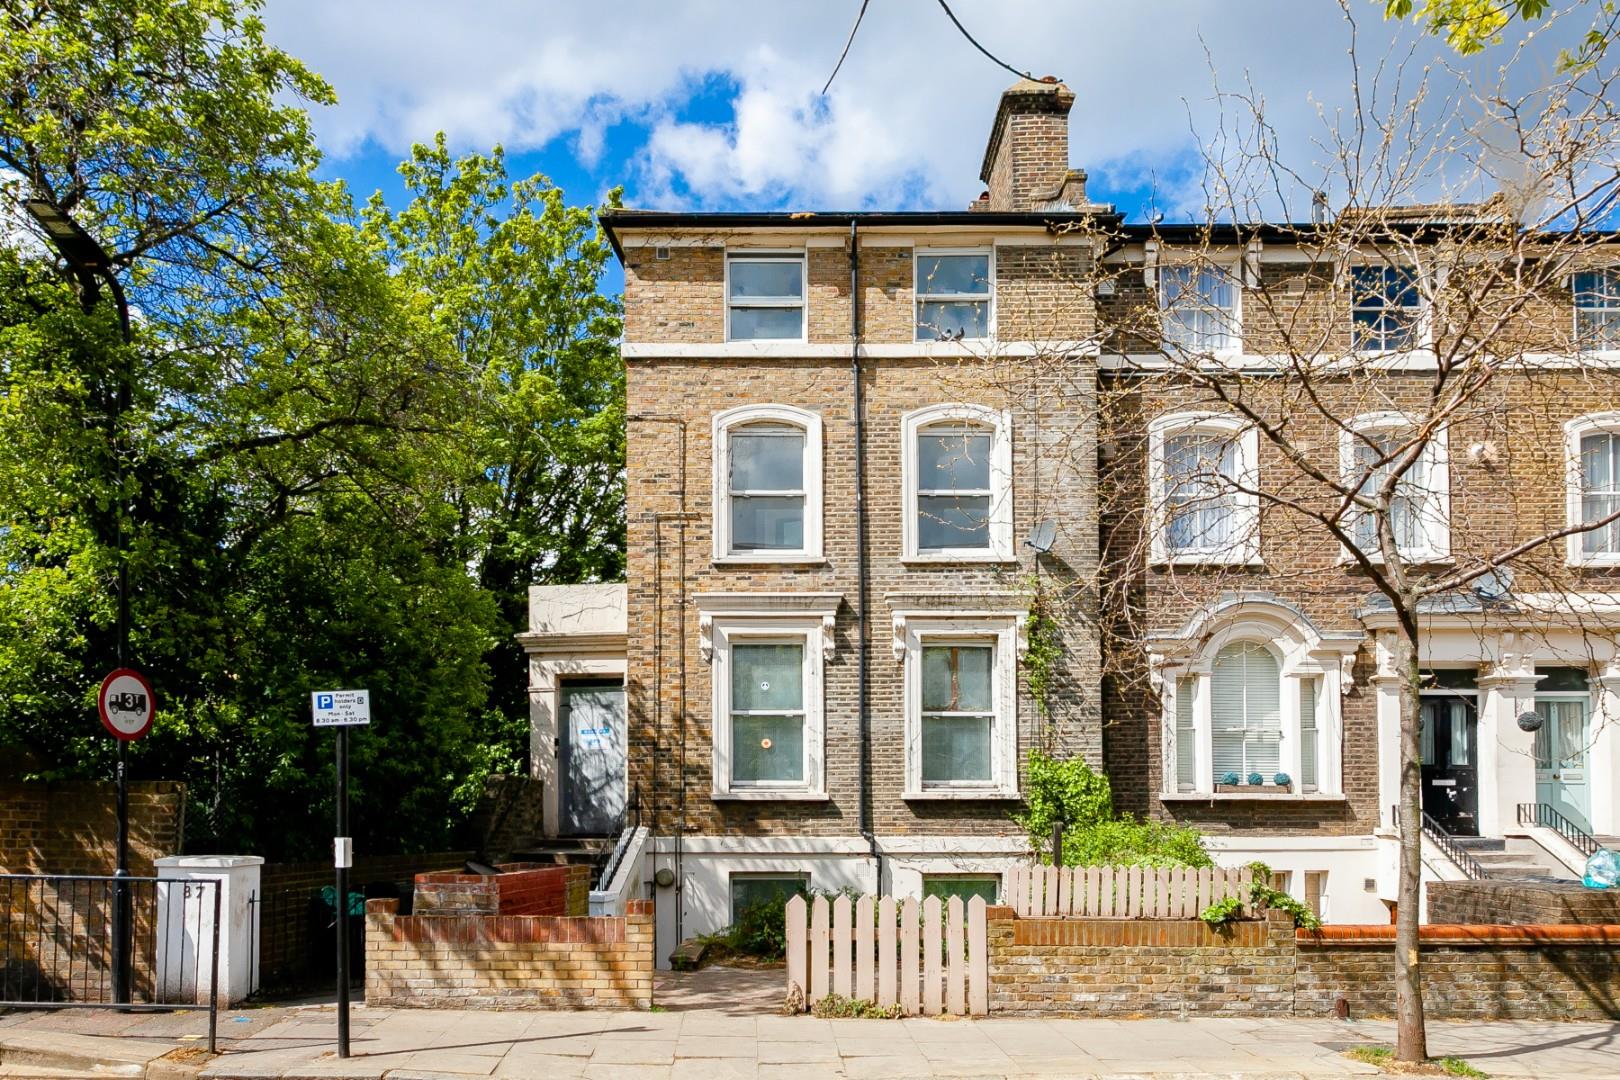 Similar Property: House in London Fields